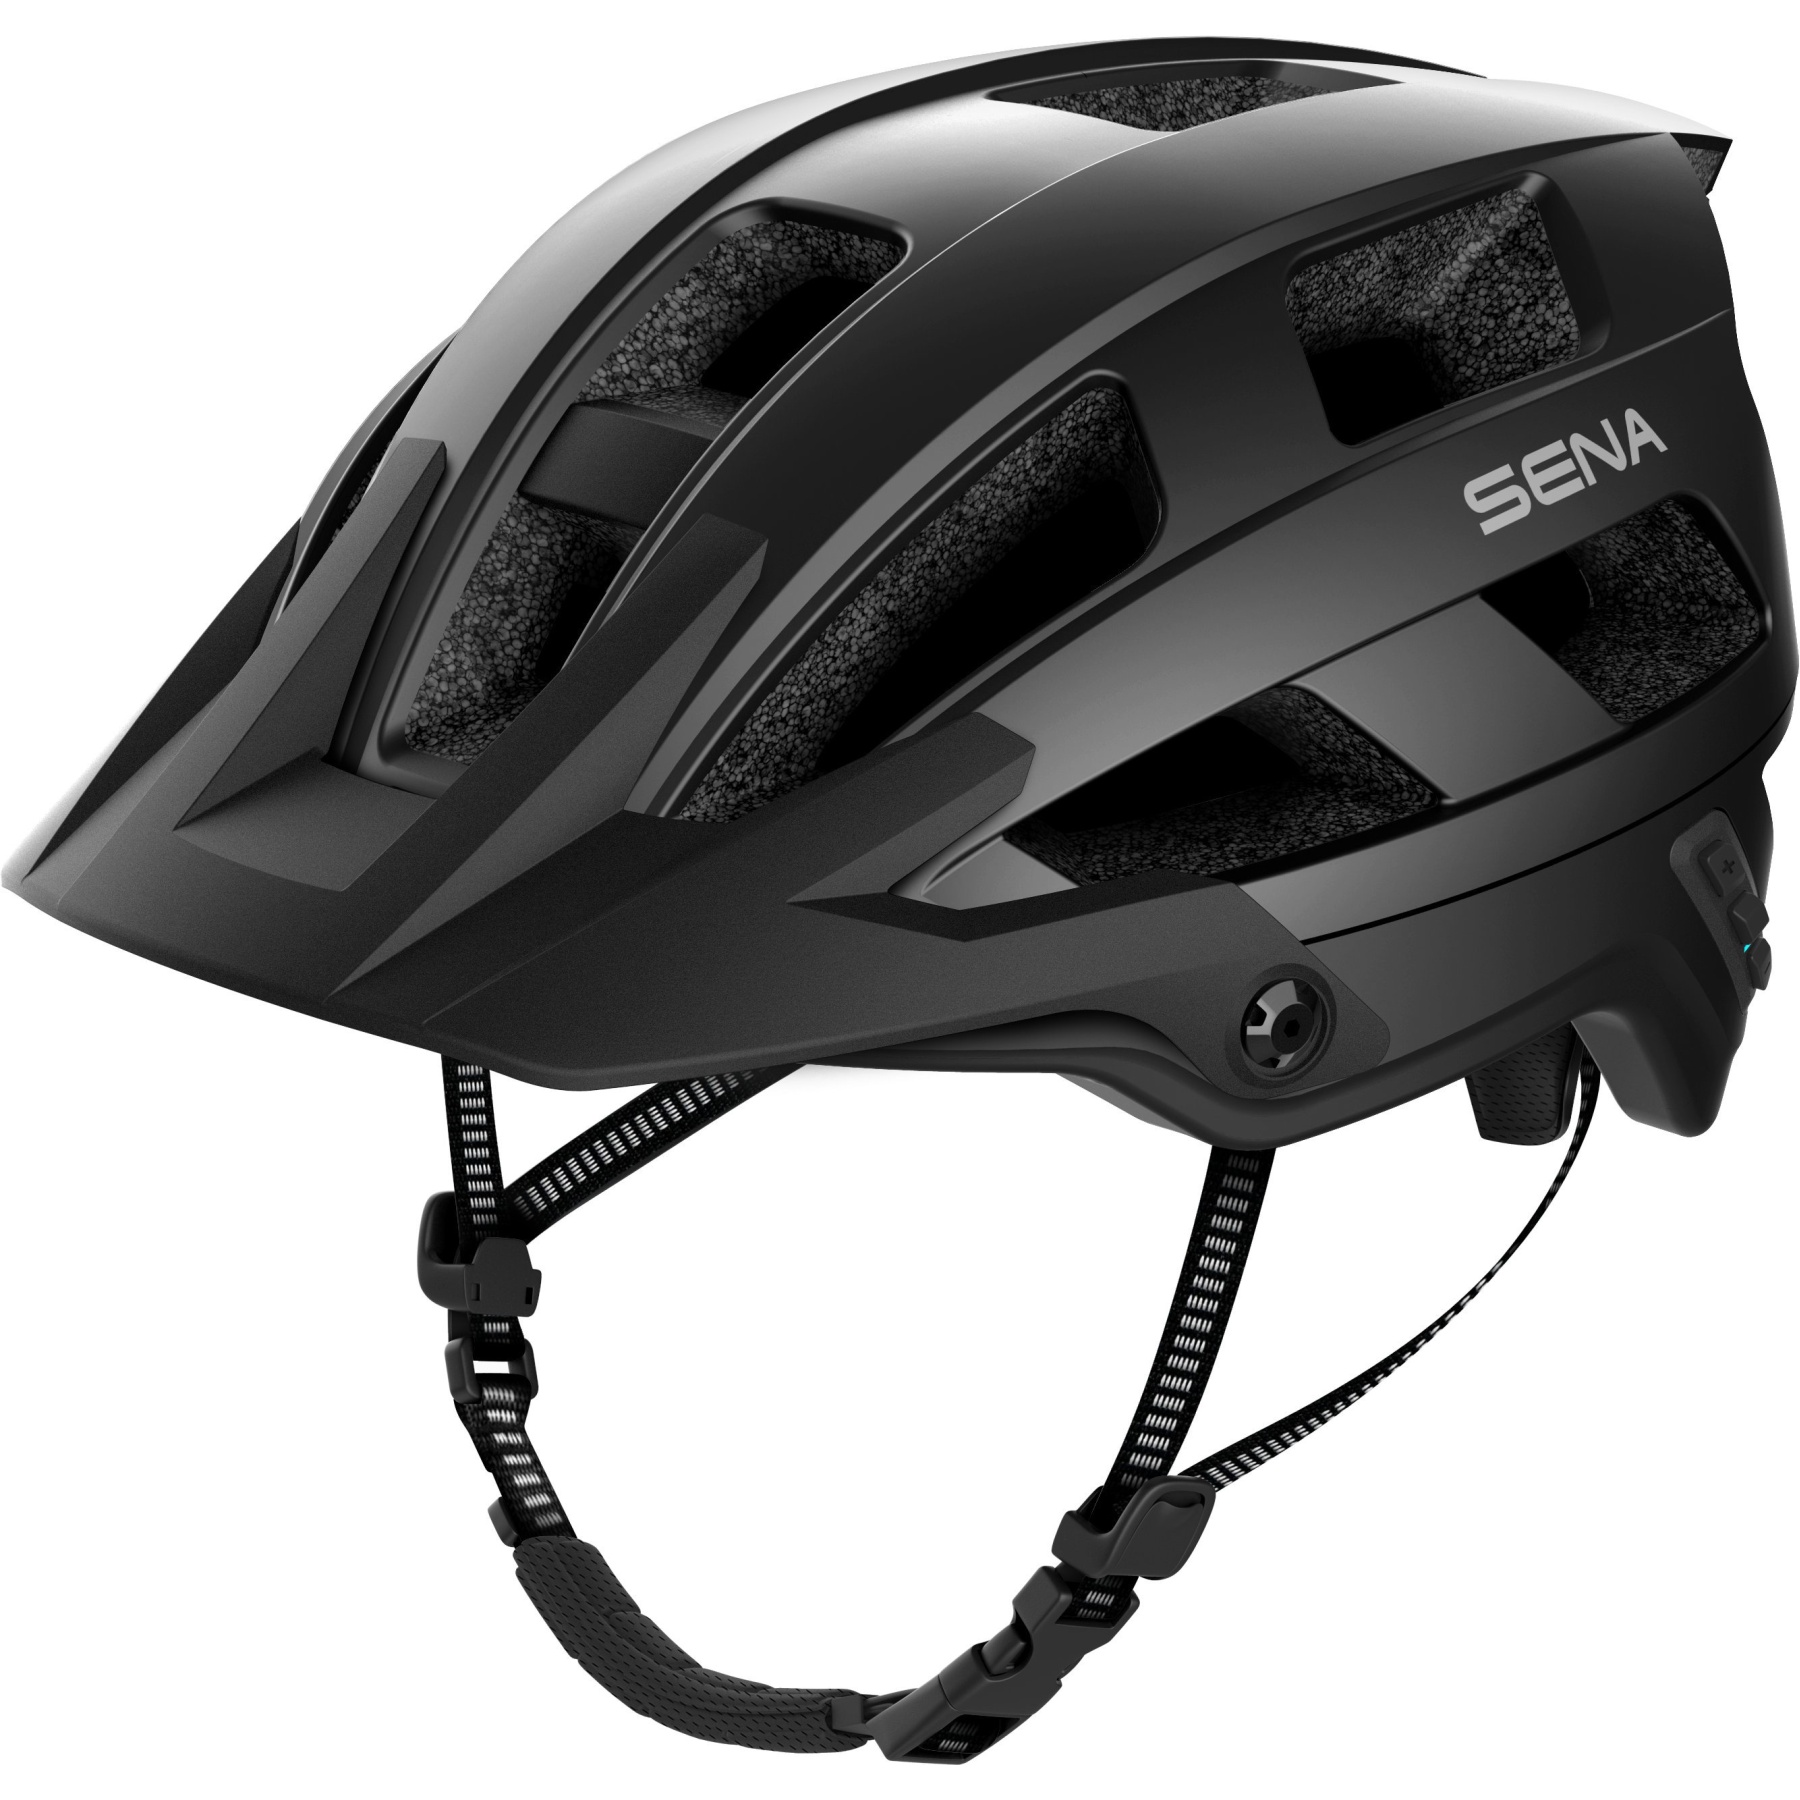 Produktbild von SENA M1 Smart MTB Helm - ohne FM-Radio - Mattschwarz